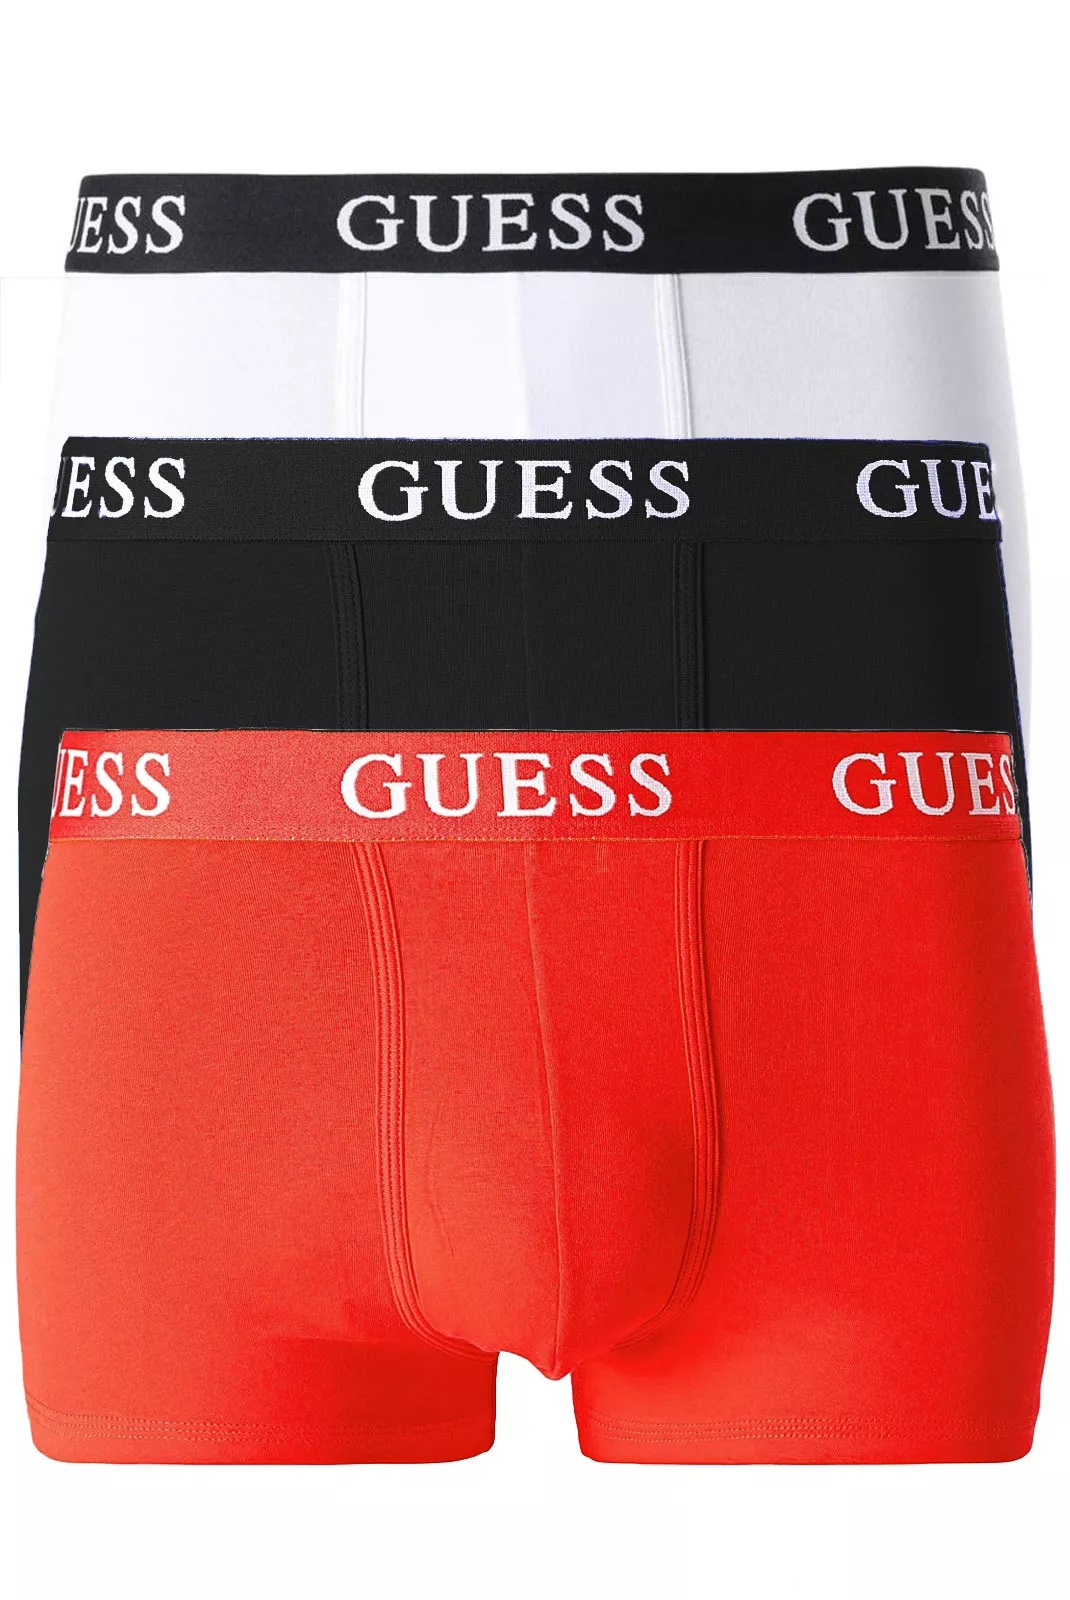 Guess pánské boxerky 3pack tři barvy Velikost: XL